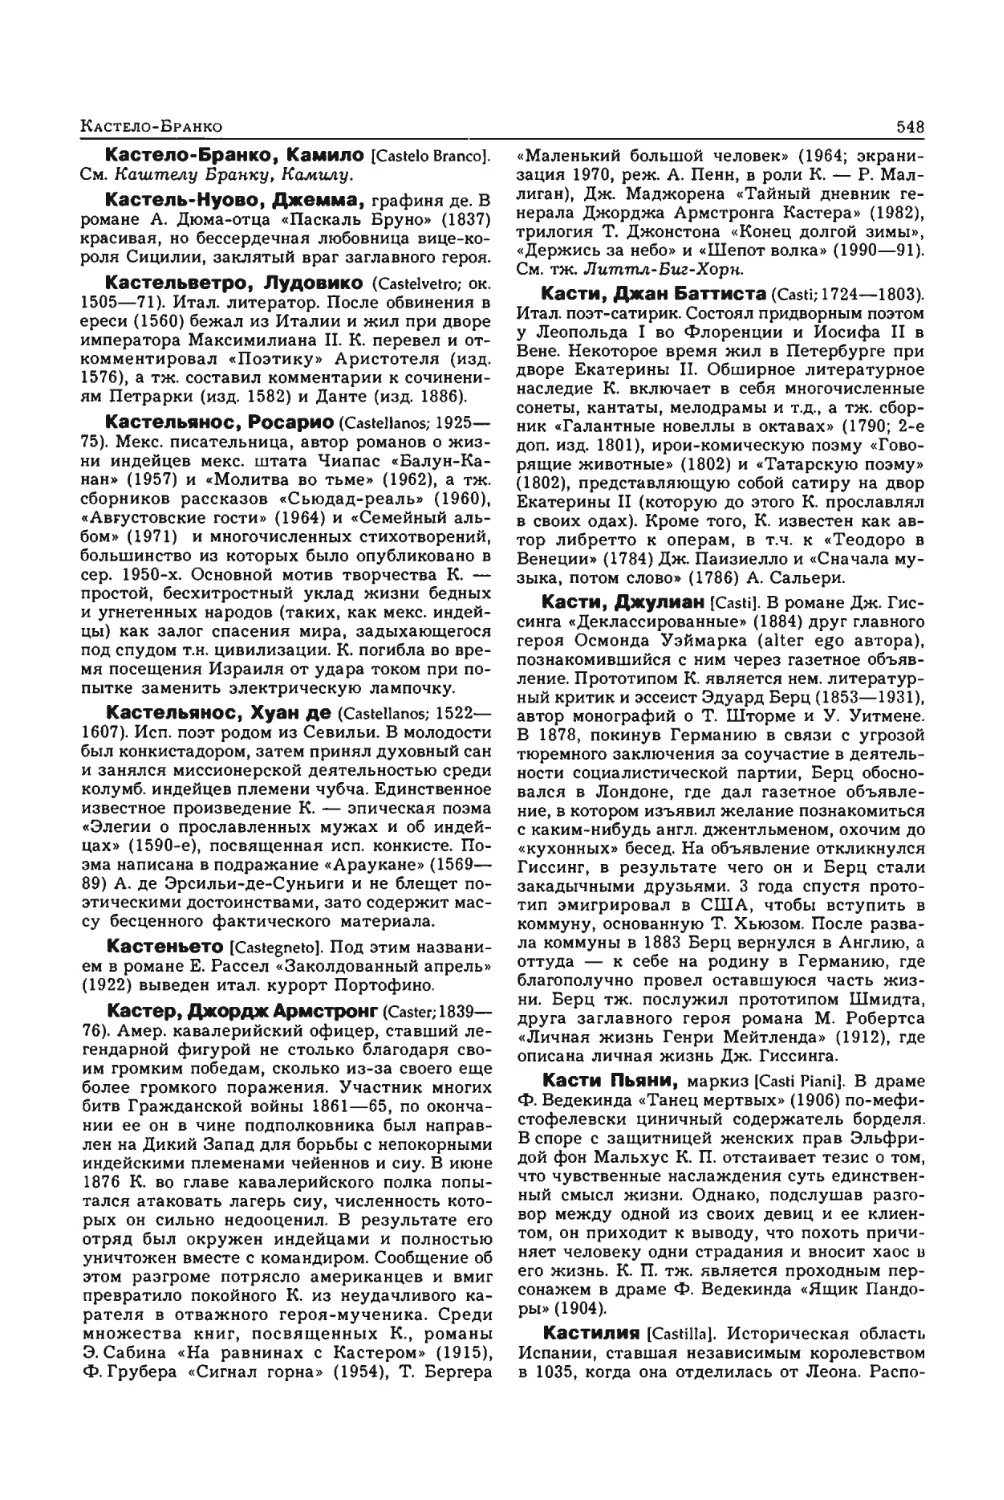 Энциклопедия читателя ек 2_page0139_1L